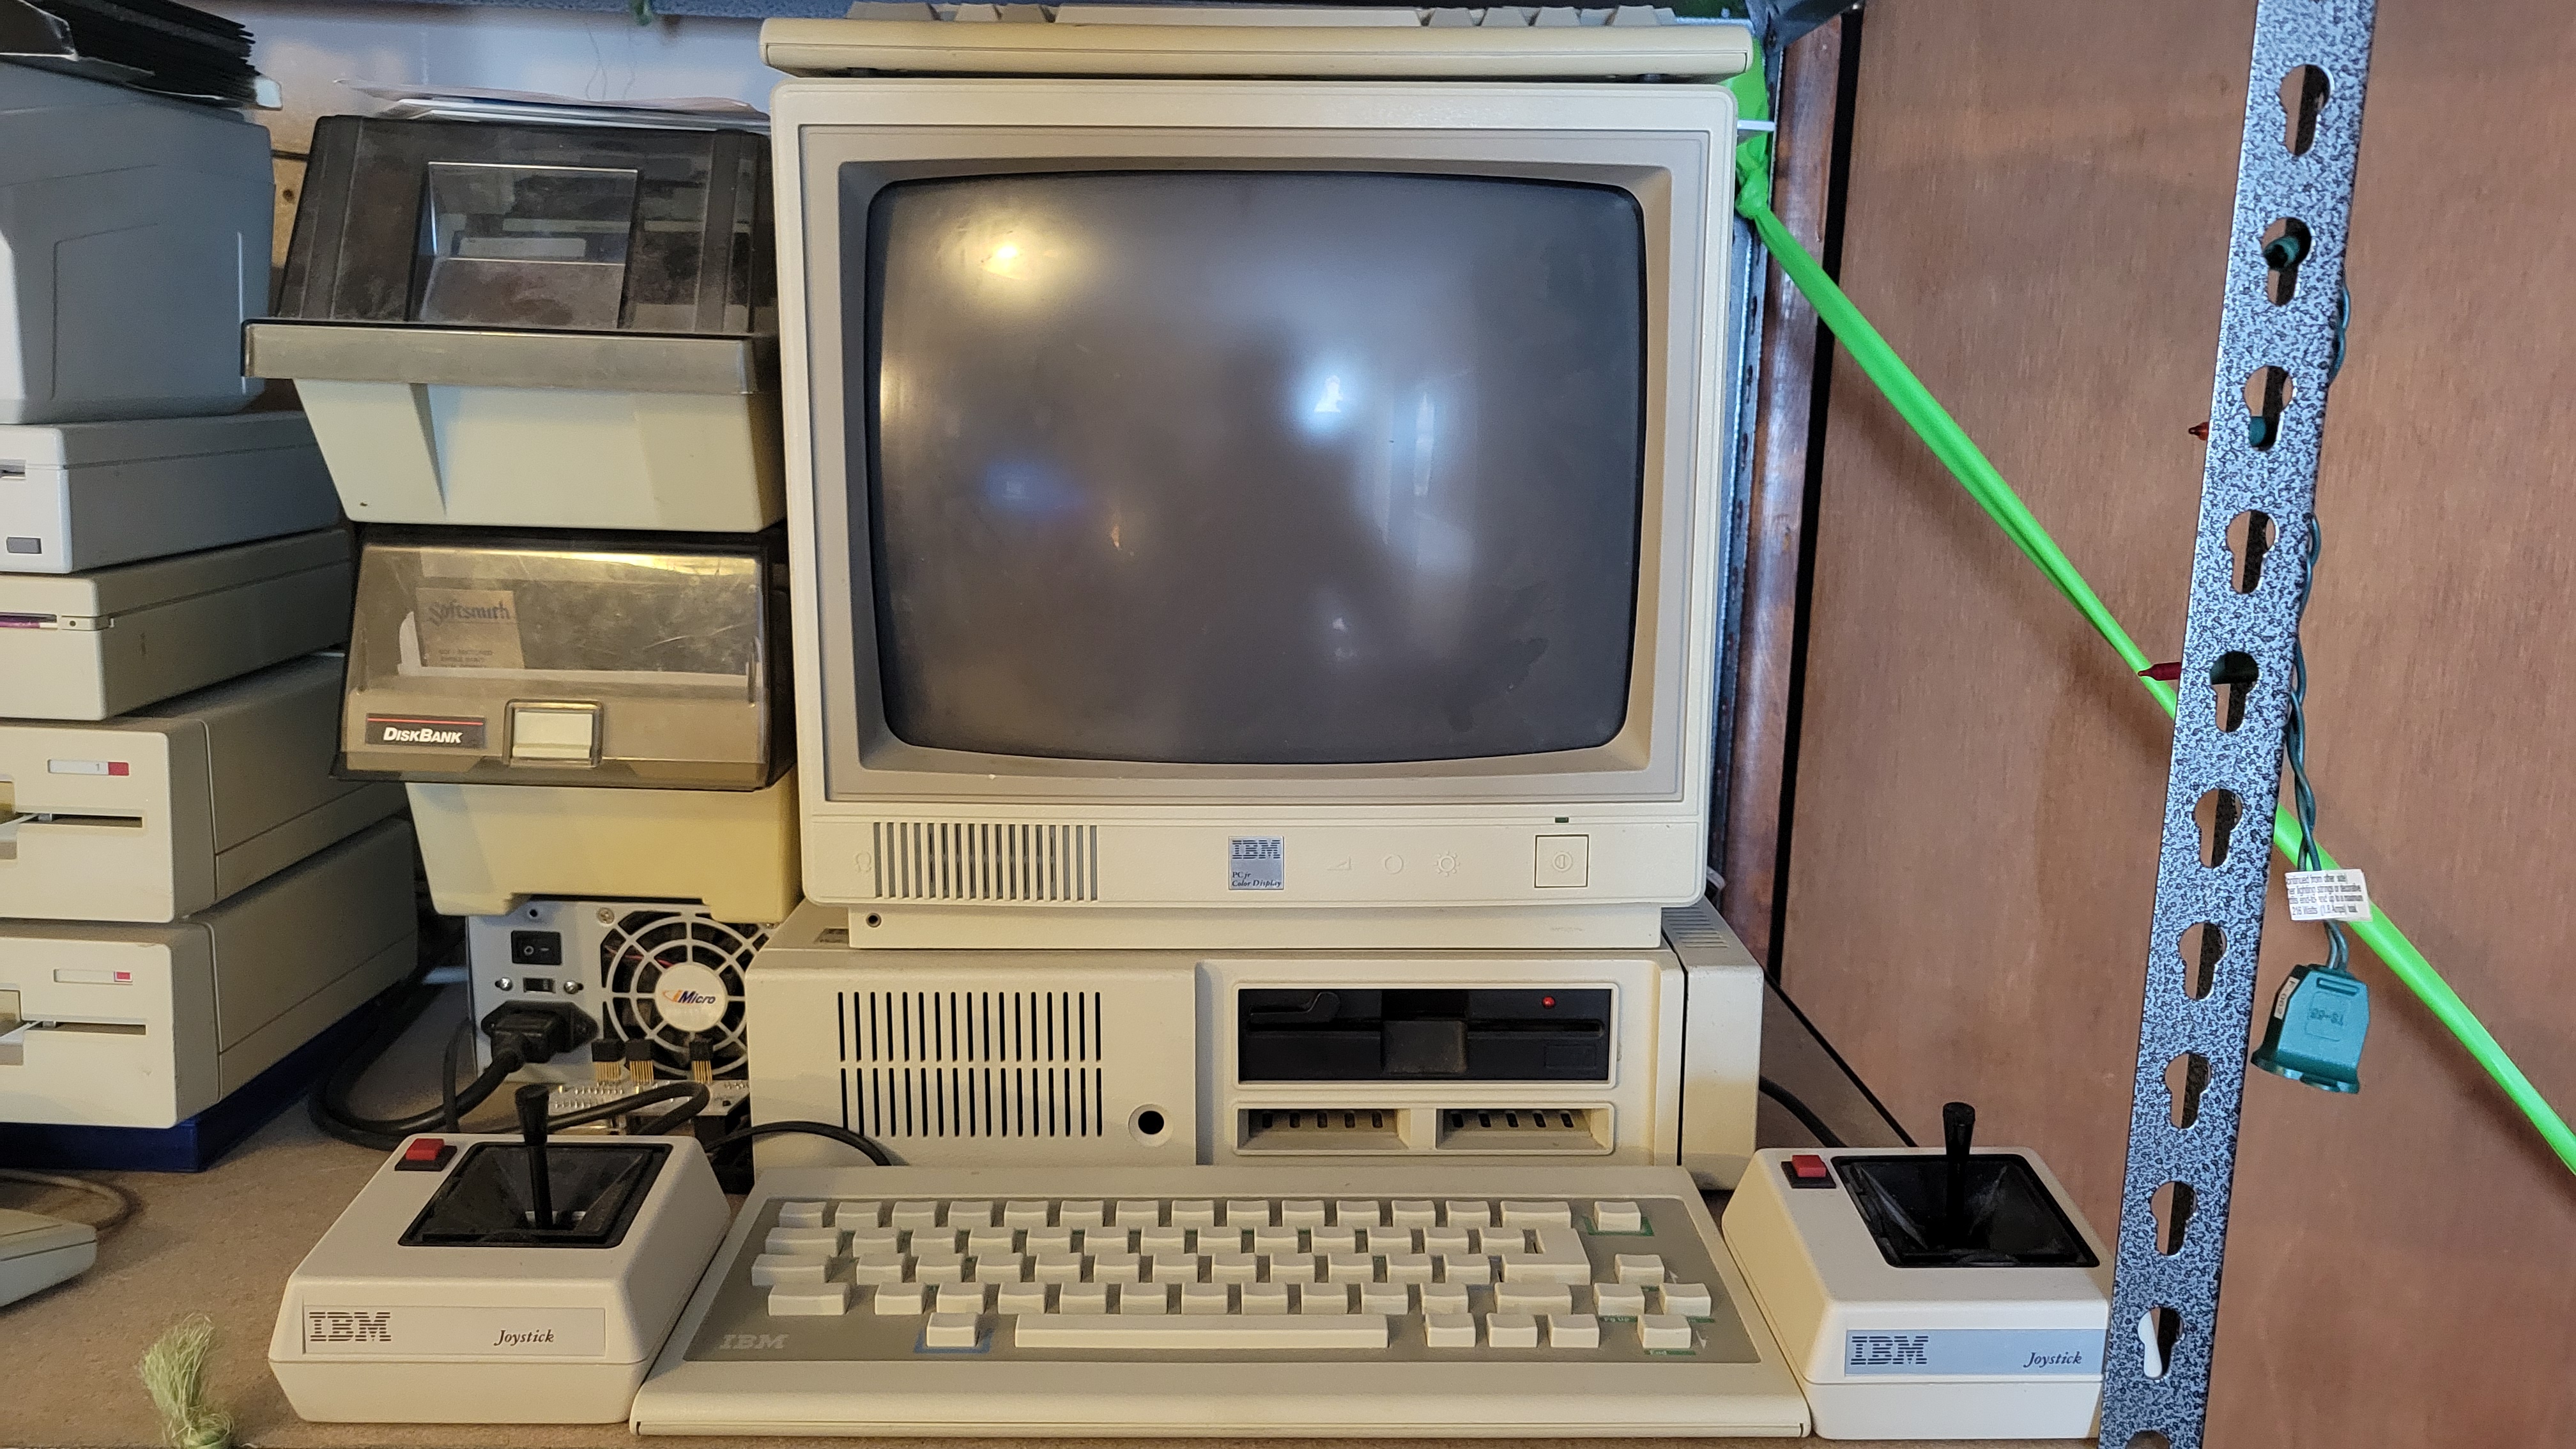 IBM PCjr Model 4860-067